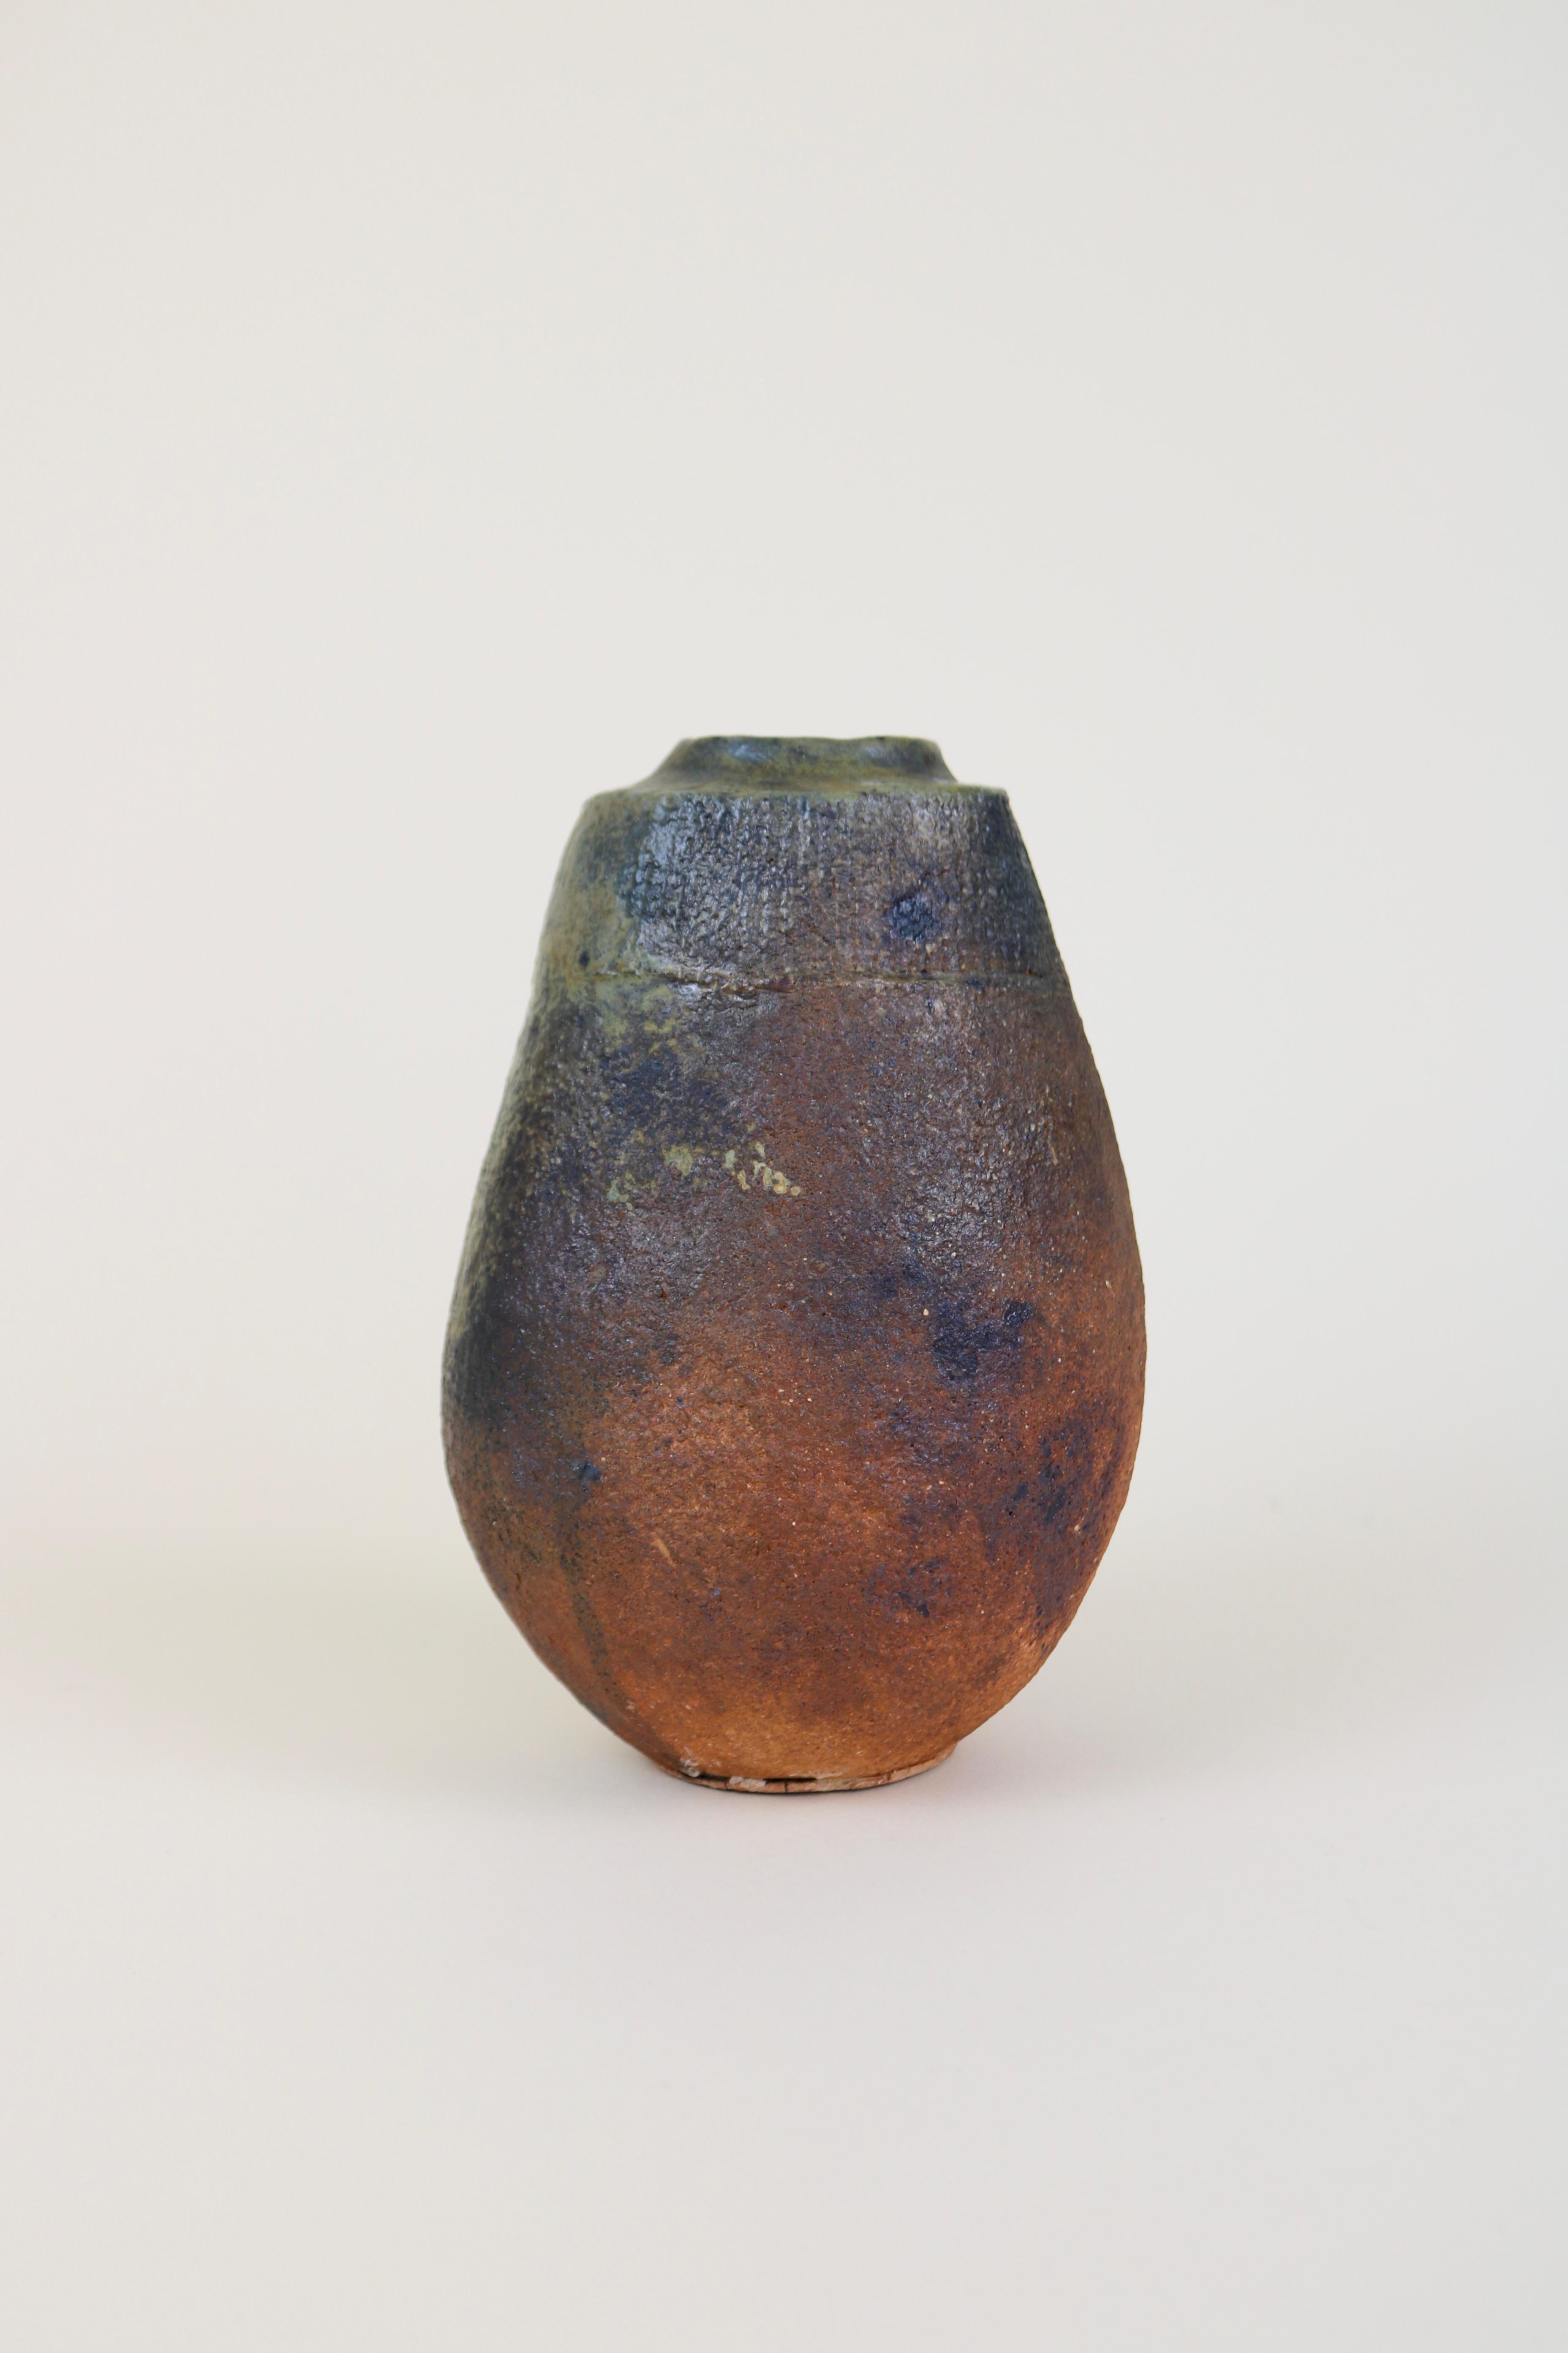 Vase sculptural en céramique de Gérard Brossard, potier de La Borne, vers 1980.
Un vase en grès lourd et épais, à la forme asymétrique et à l'aspect brut fait à la main.

Brossard a été l'élève de Jean et Jacqueline Lerat dans les années